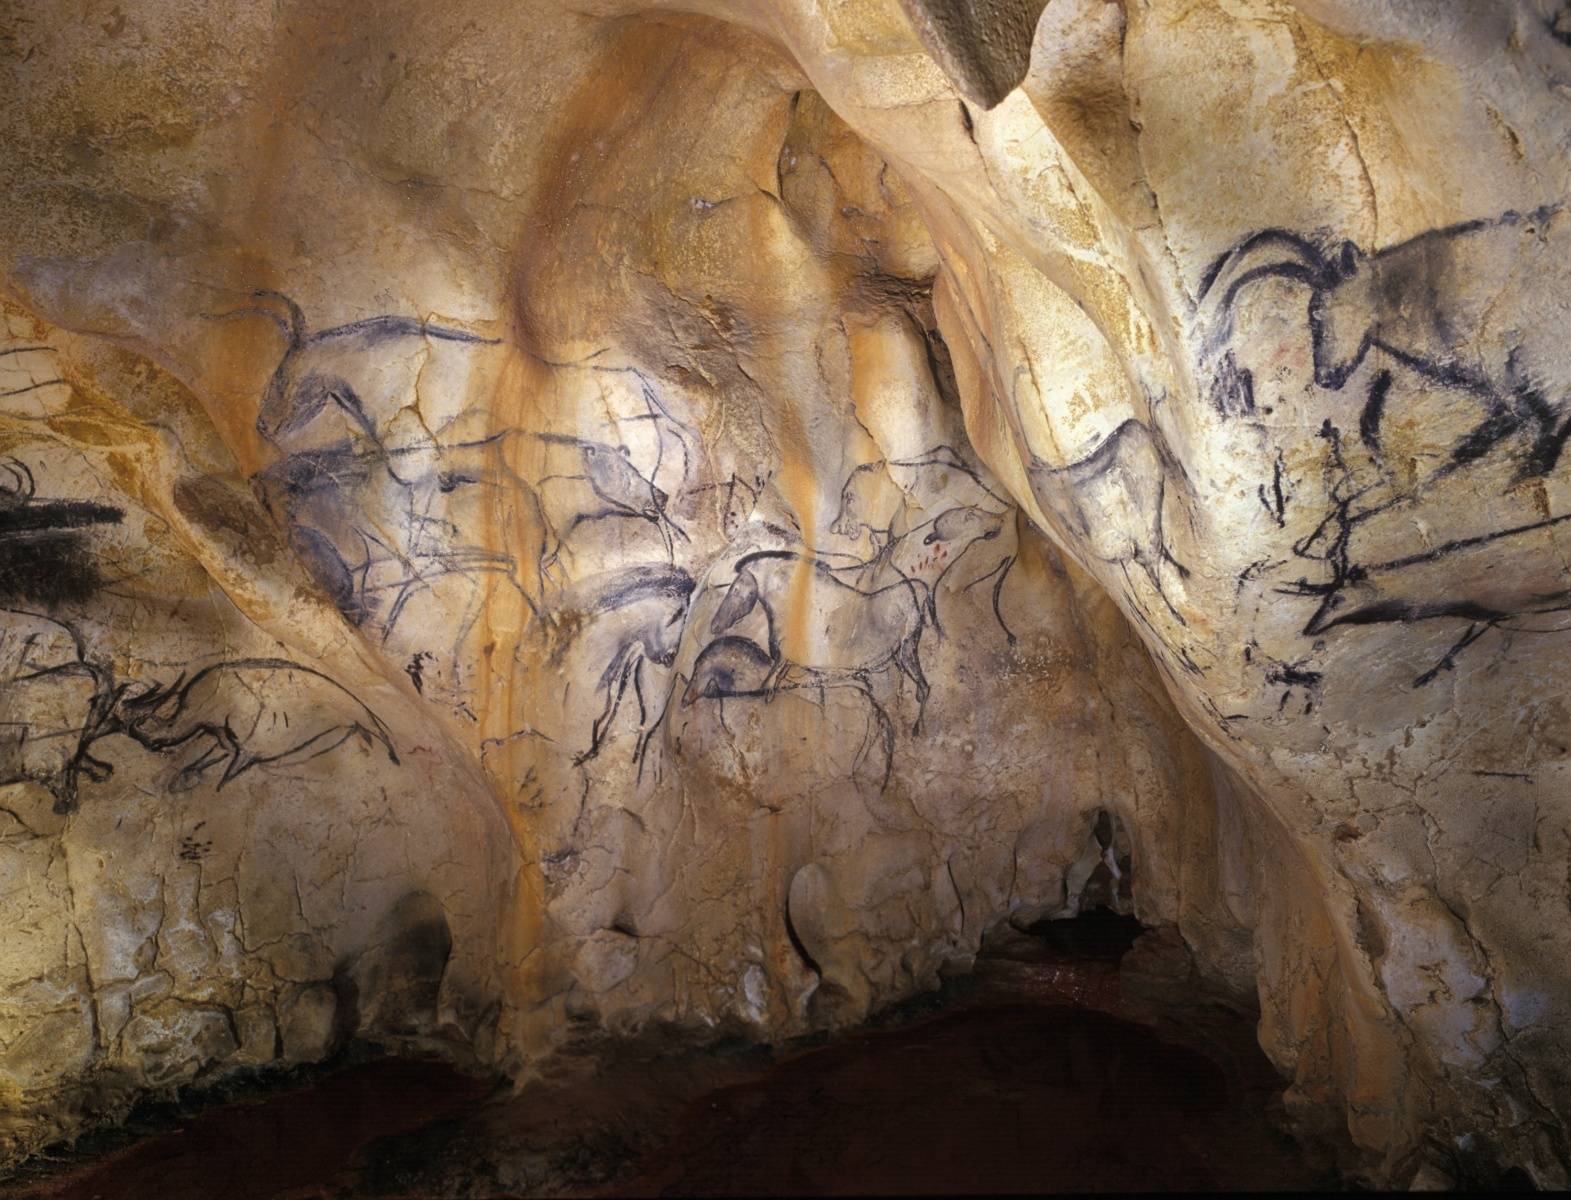 Чудо природы шондонг — затерянный лес в самой большой пещере мира